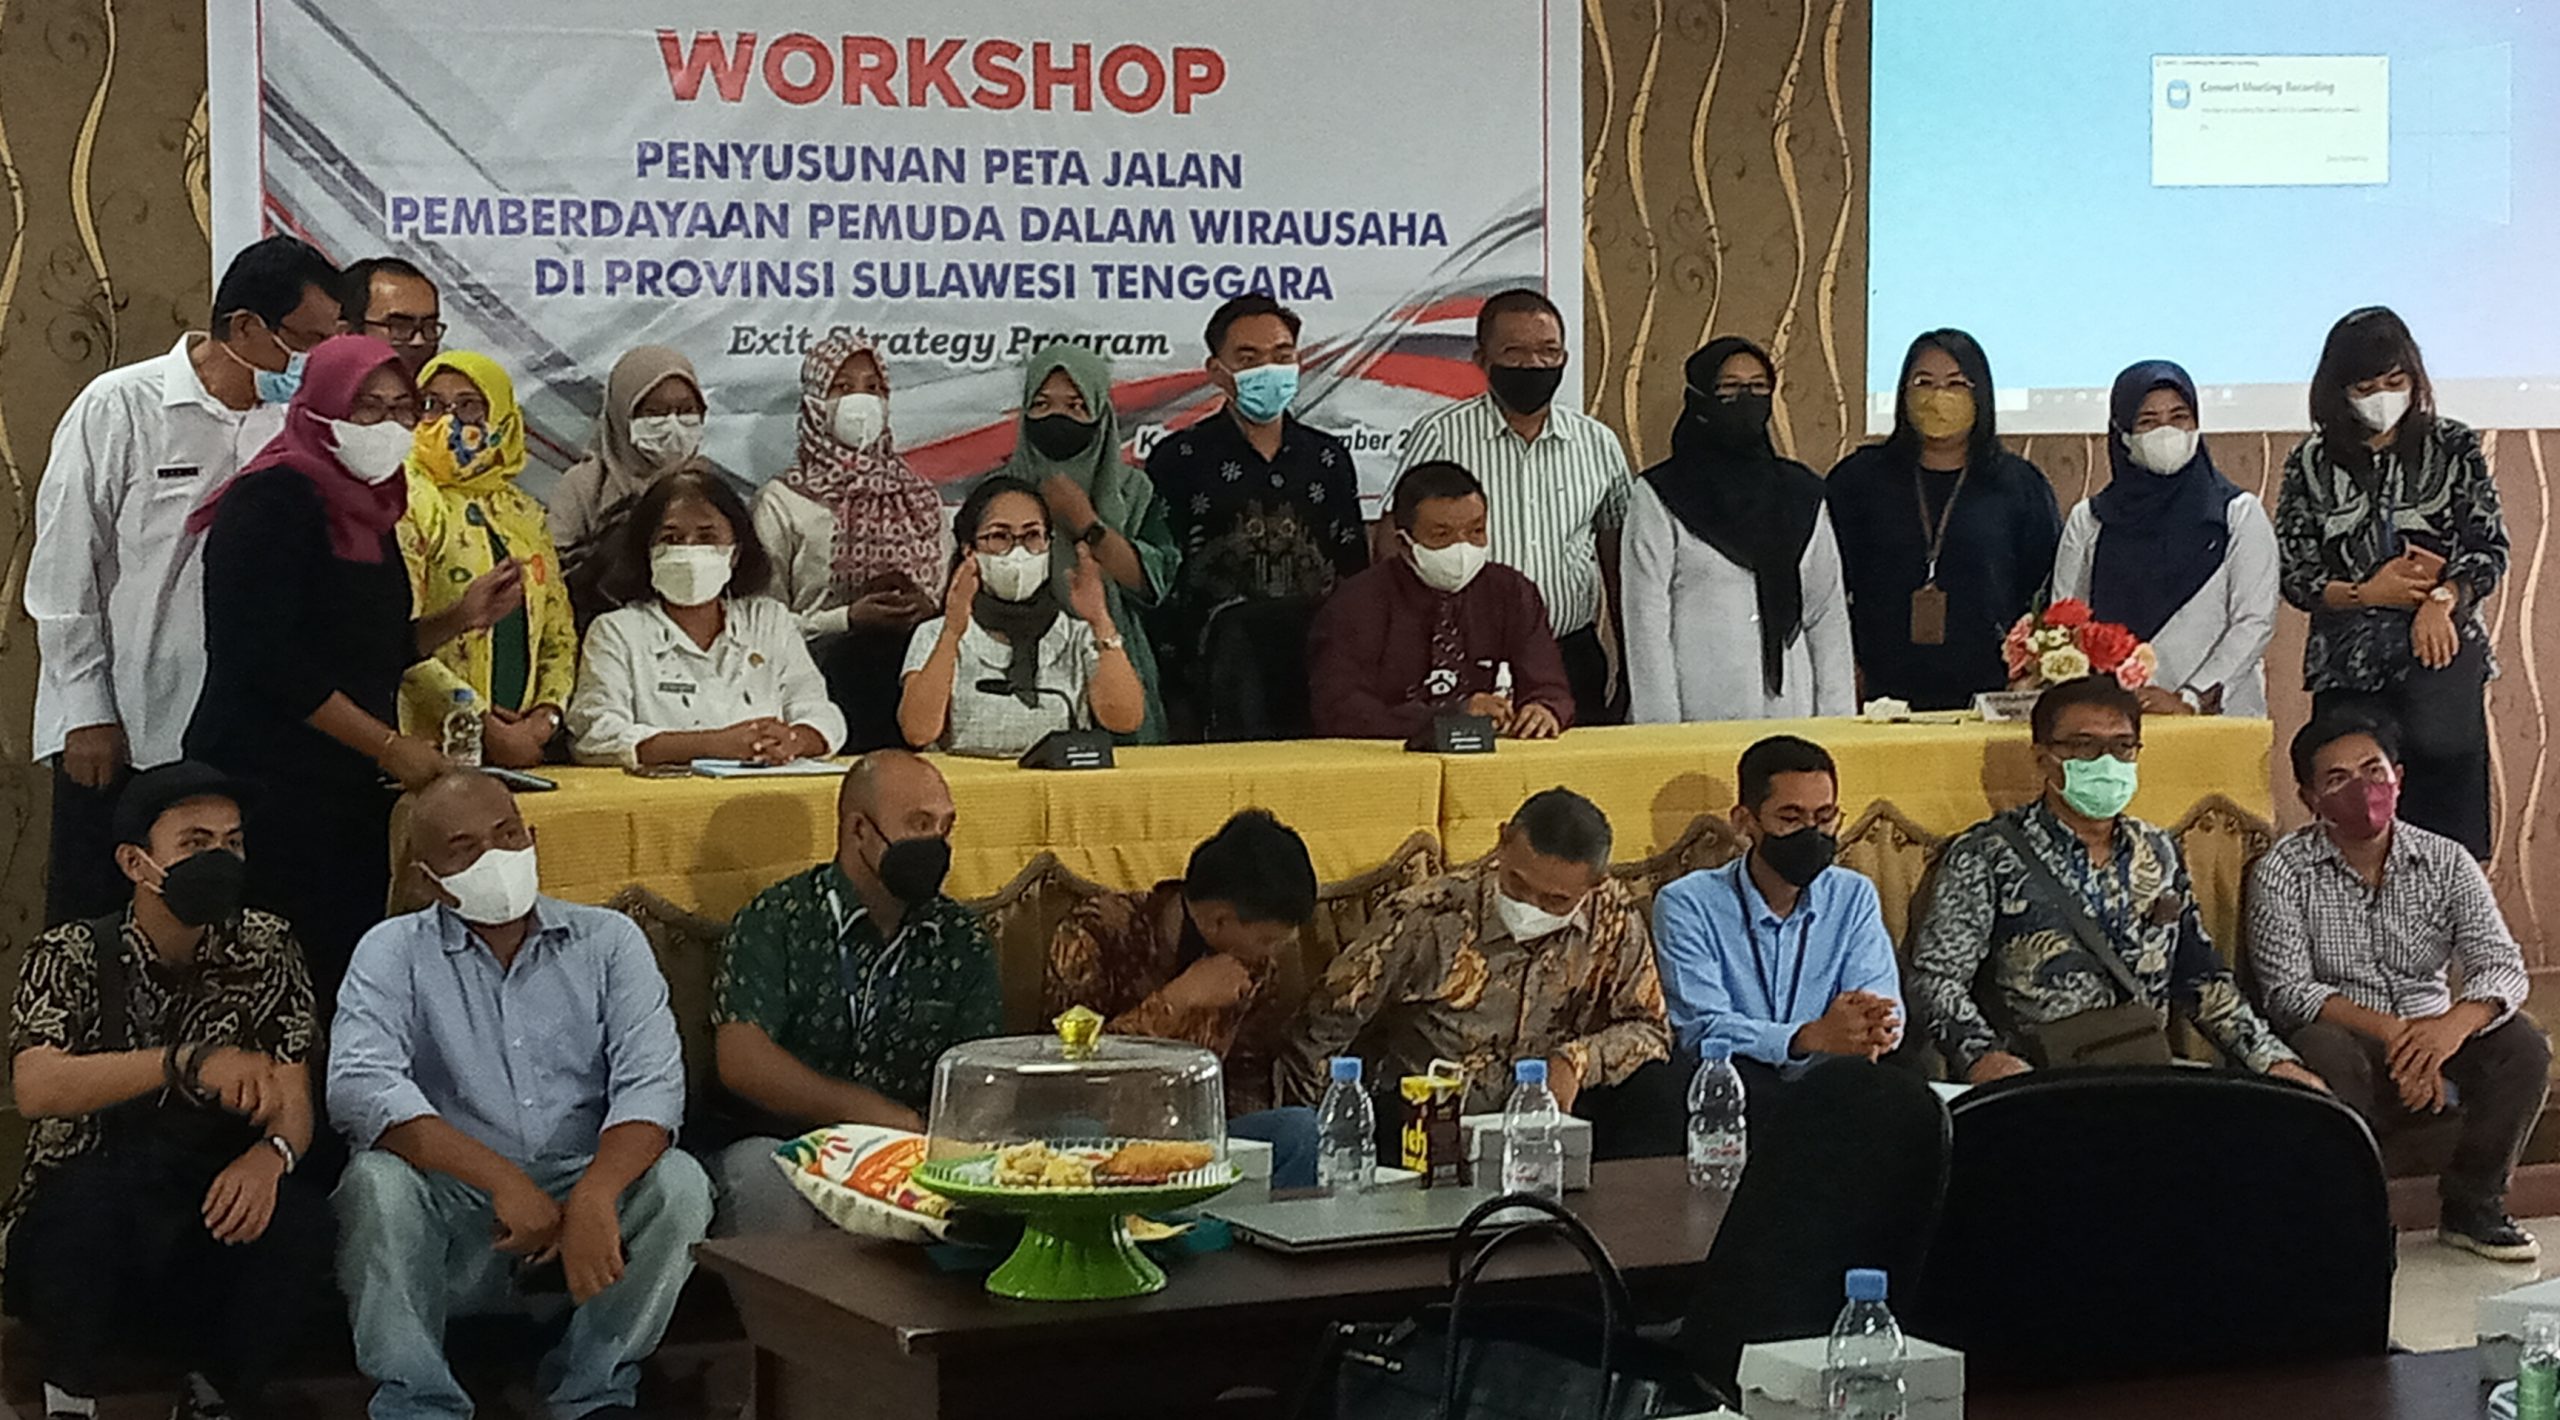 Pose bersama peserta Workshop Penyusunan Peta Jalan Pemberdayaan Pemuda Dalam Wirausaha di Provinsi Sulawesi Tenggara, di Kantor Bapedda Sultra, Rabu (1/9/2021) (Foto: Al Iksan/SULTRAKINI.COM)